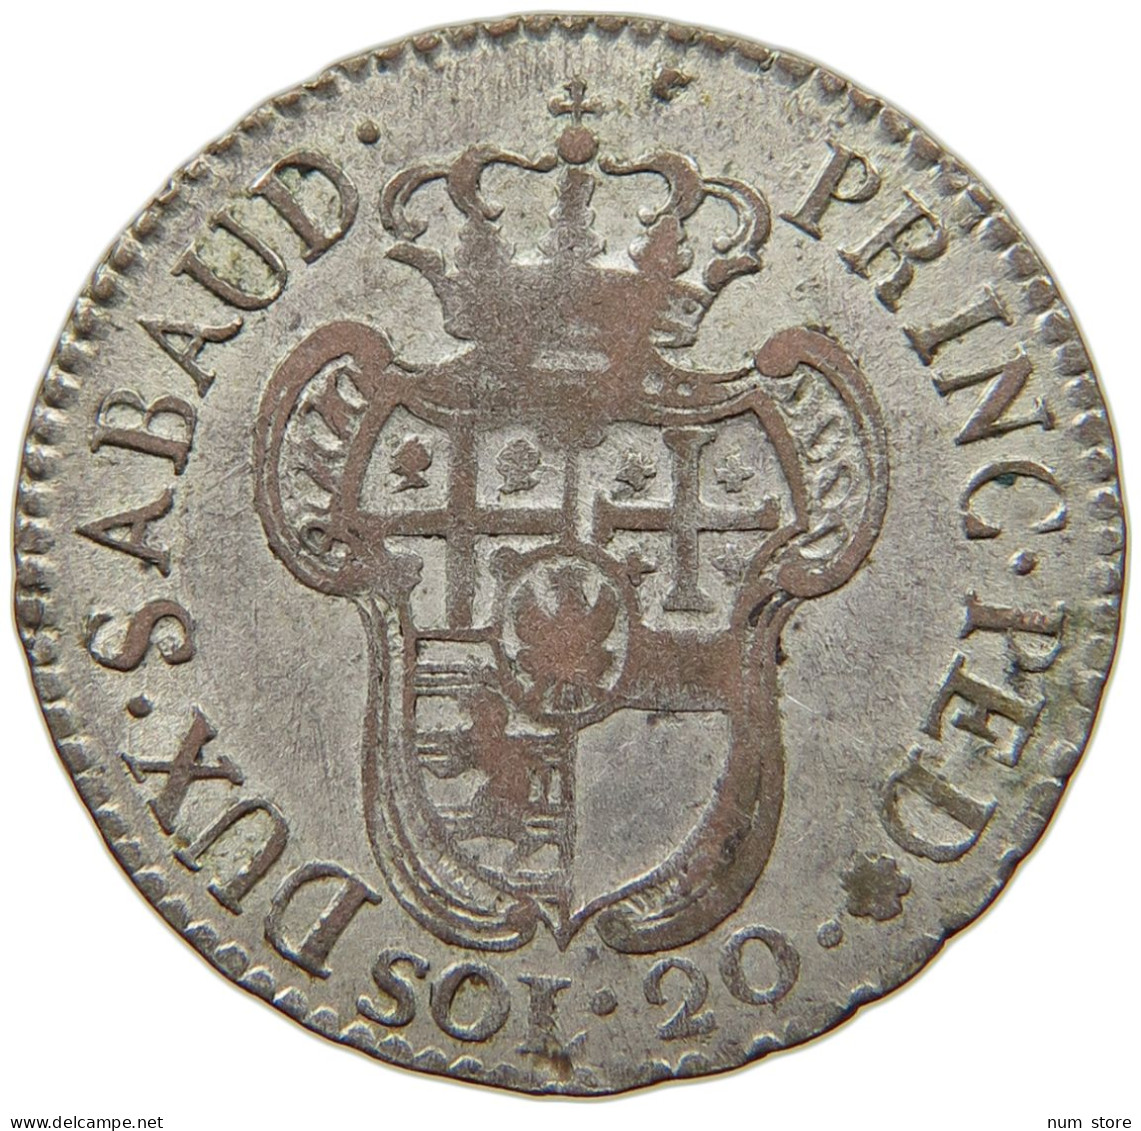 ITALIEN-SARDINIEN 20 SOLDI 1796 VITTORIO AMADEO III., 1773-1796. #MA 008541 - Piamonte-Sardaigne-Savoie Italiana